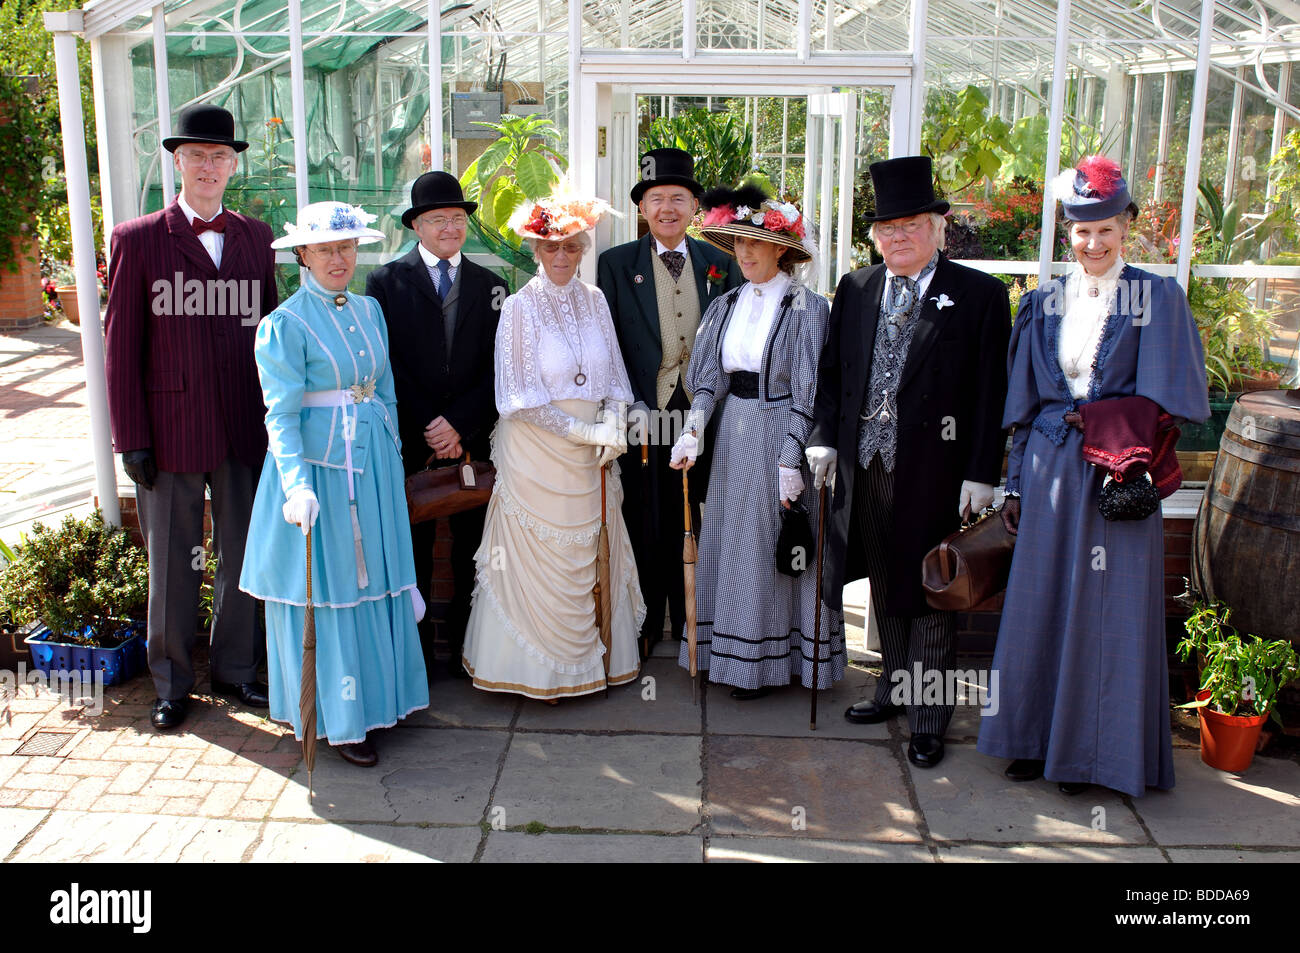 La gente en trajes de estilo victoriano en la colina cercana Jardines, Warwick, Warwickshire, Inglaterra, Reino Unido. Foto de stock